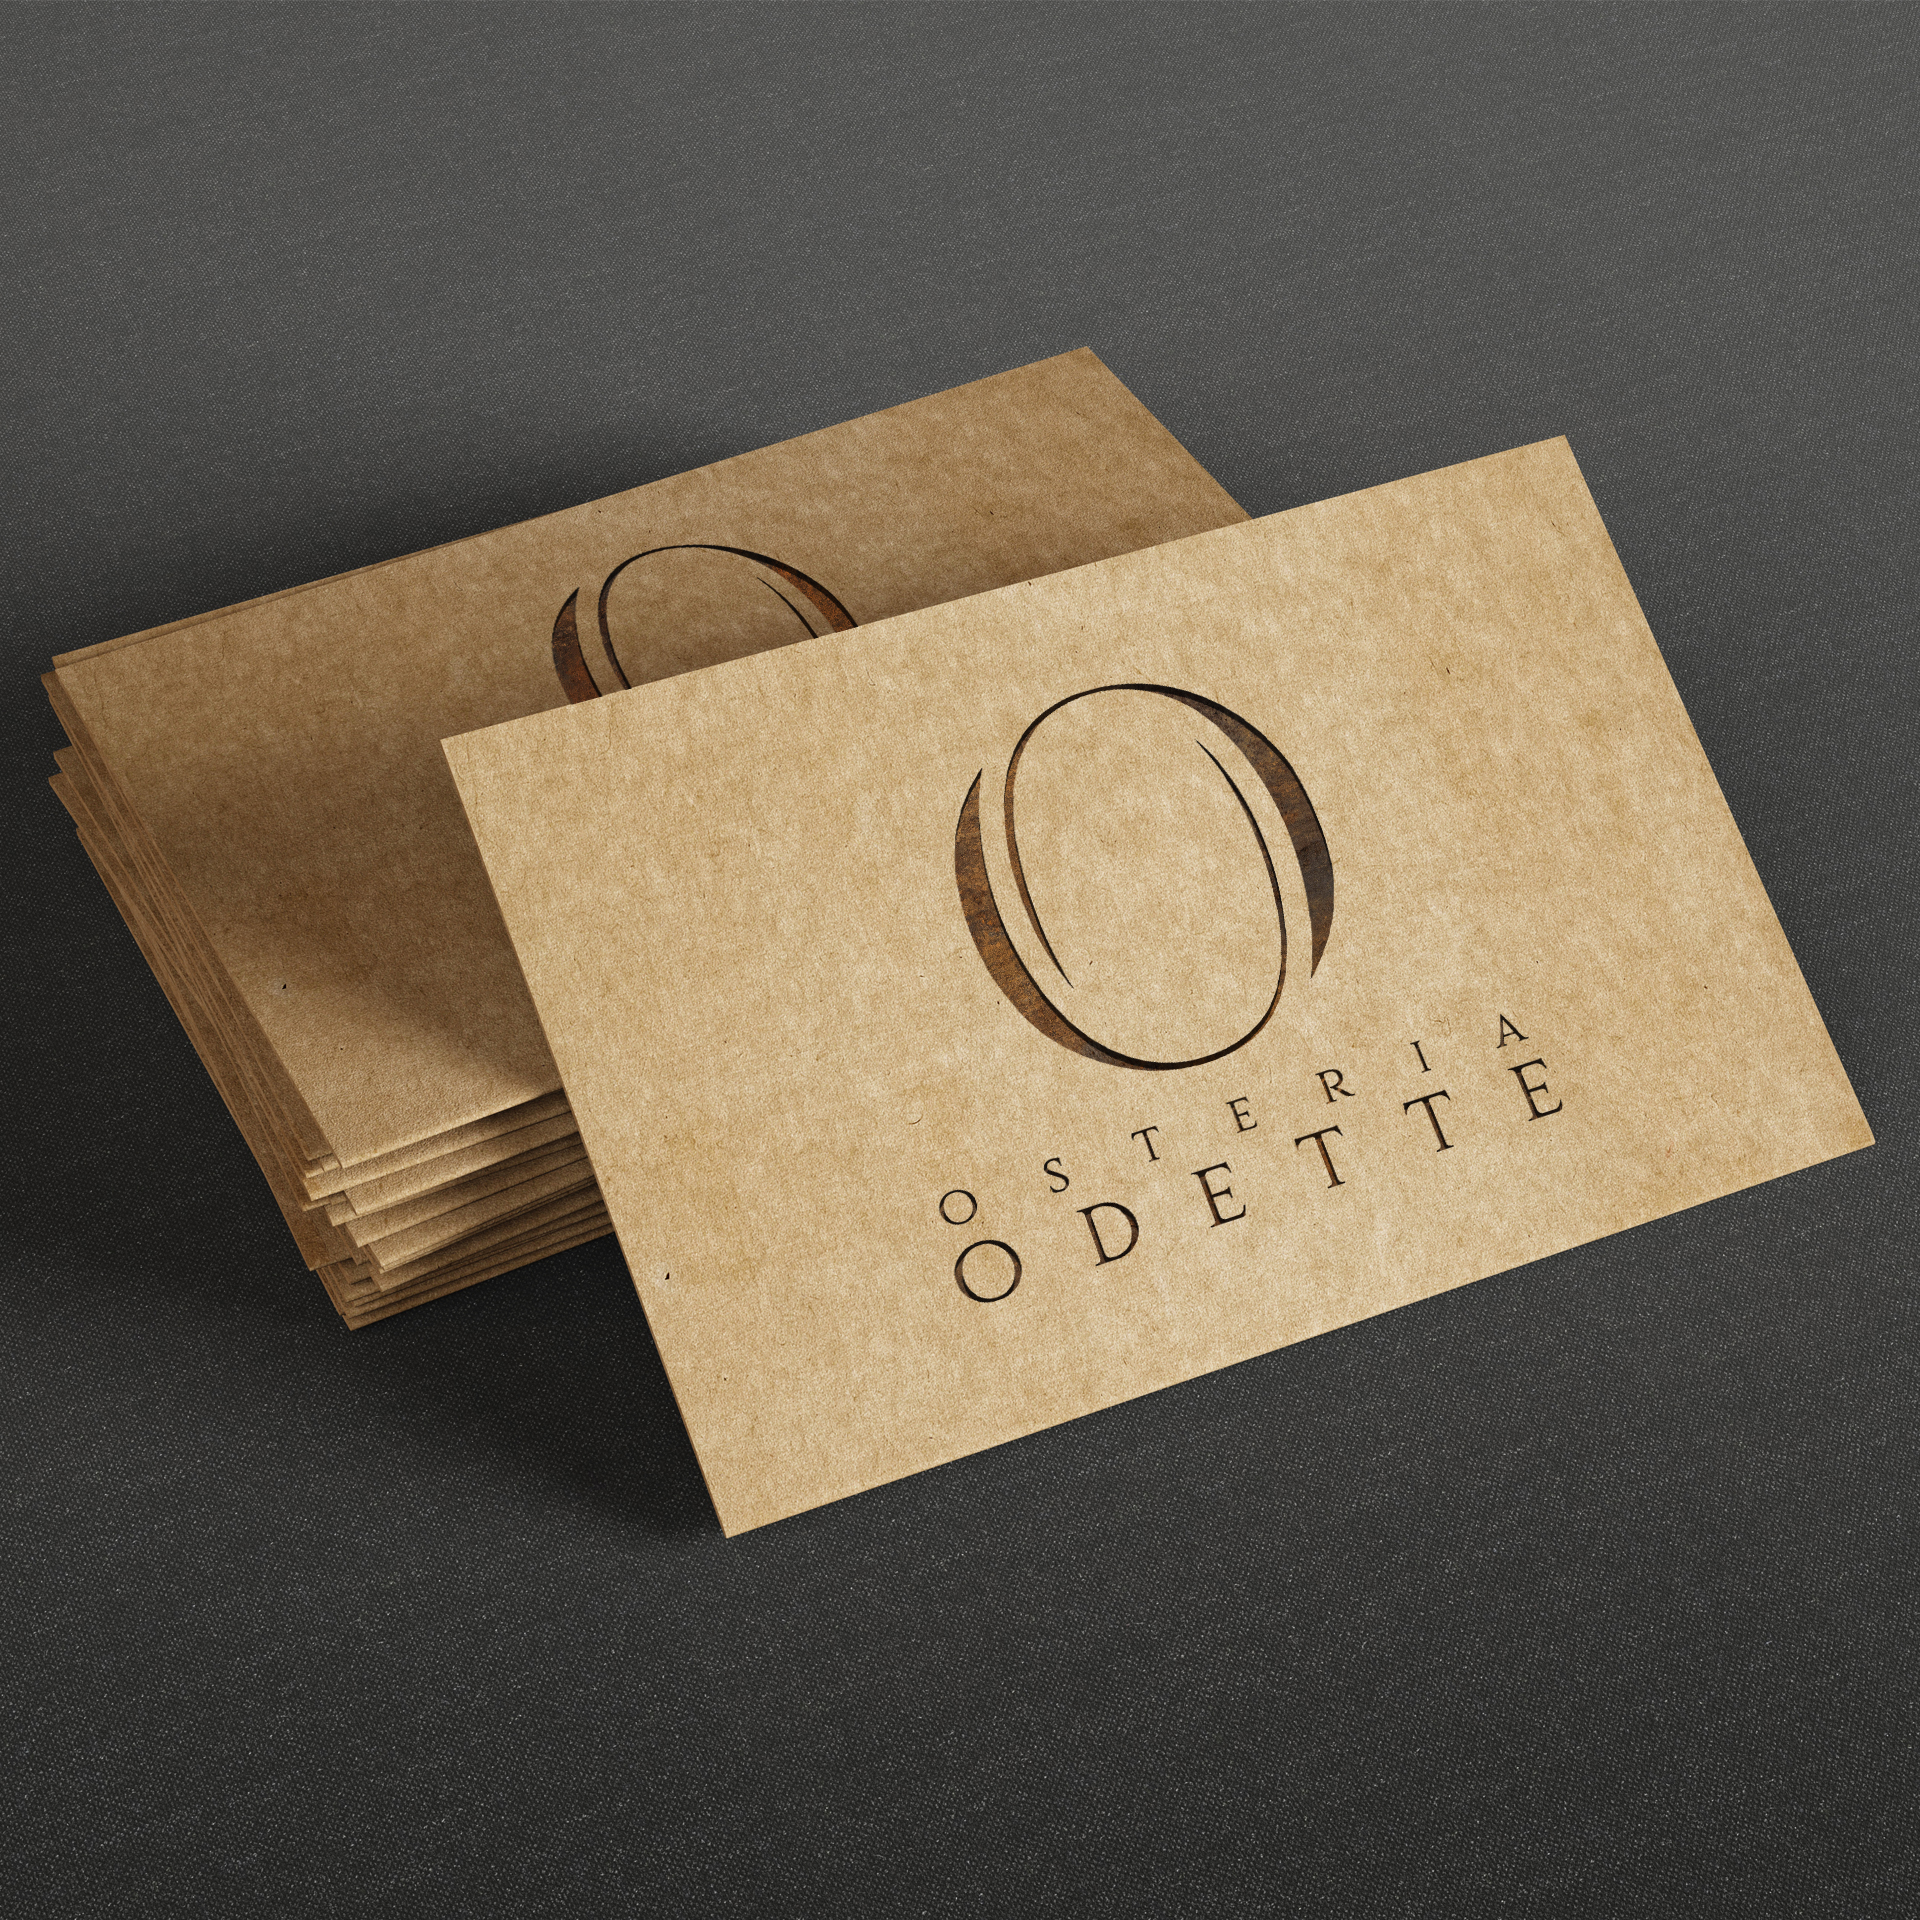 Osteria Odette OnDesign Logo